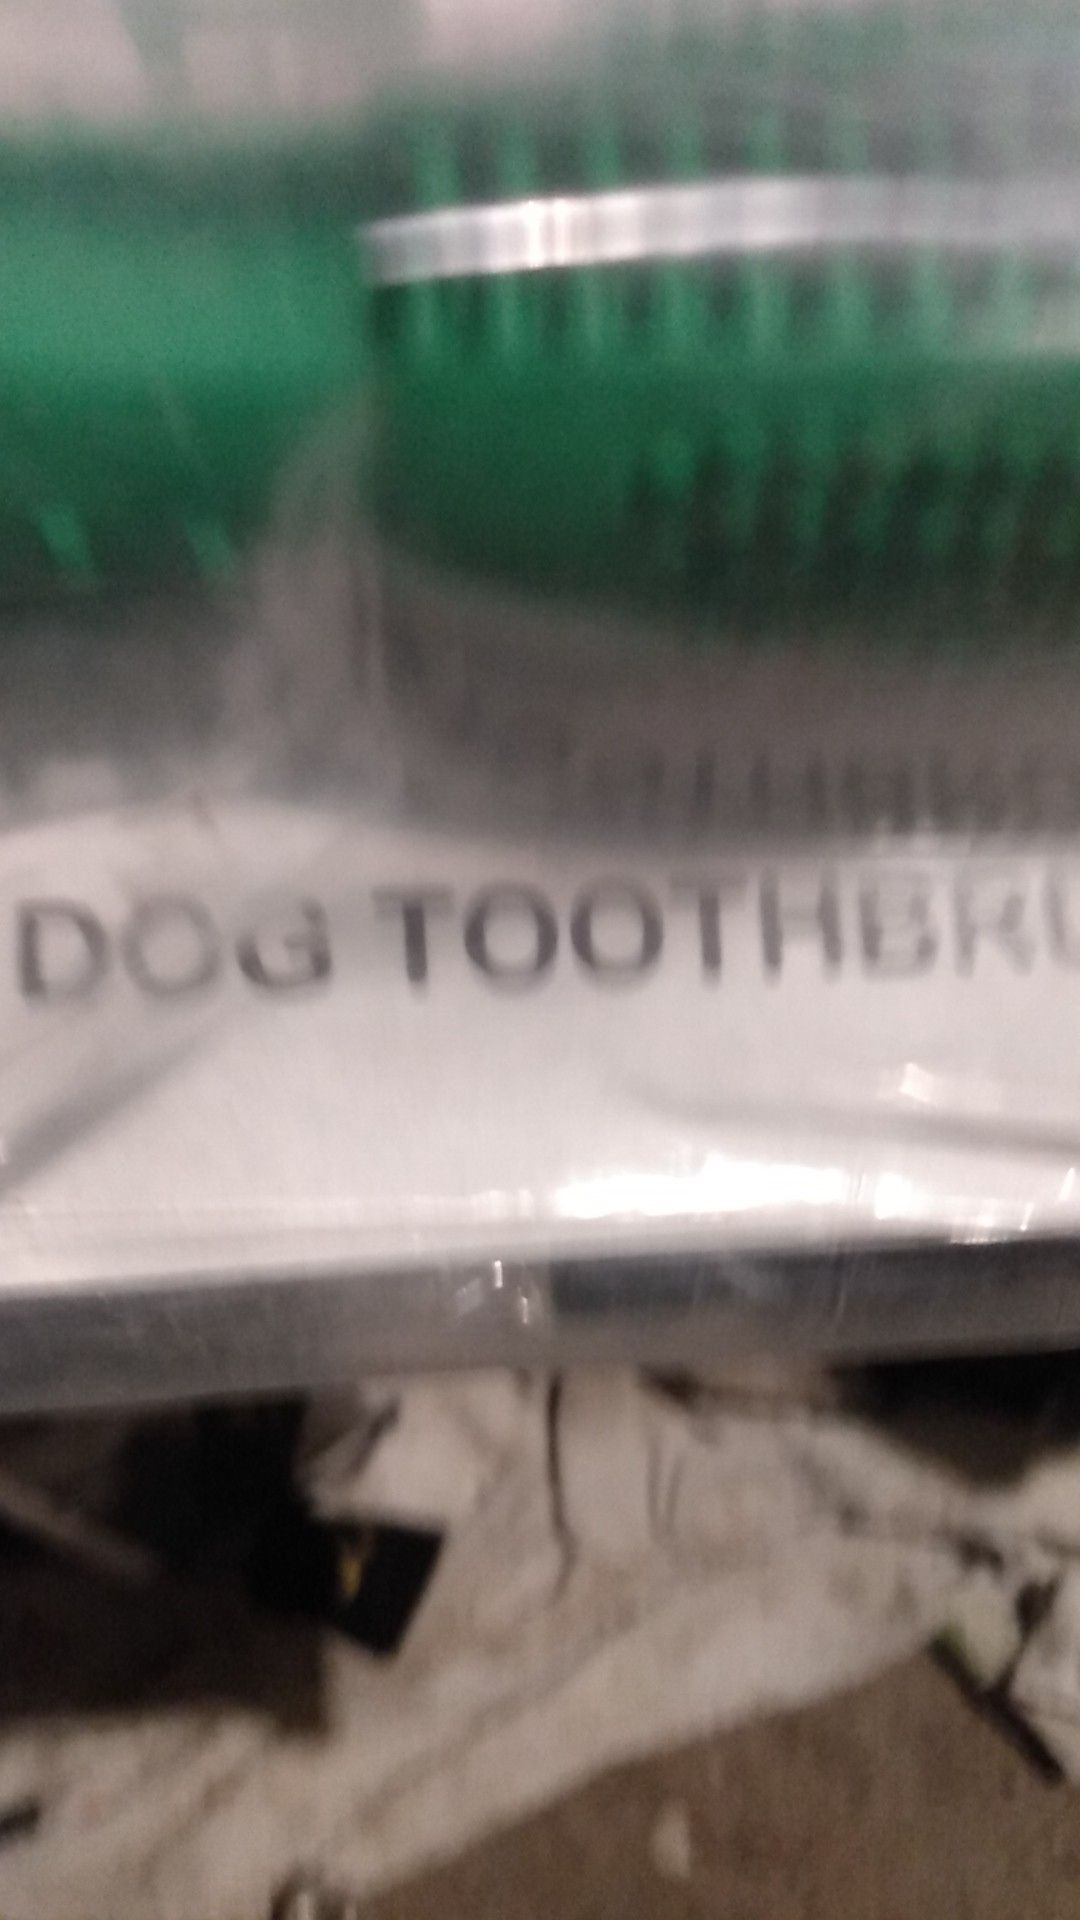 Dog 🦷 brush